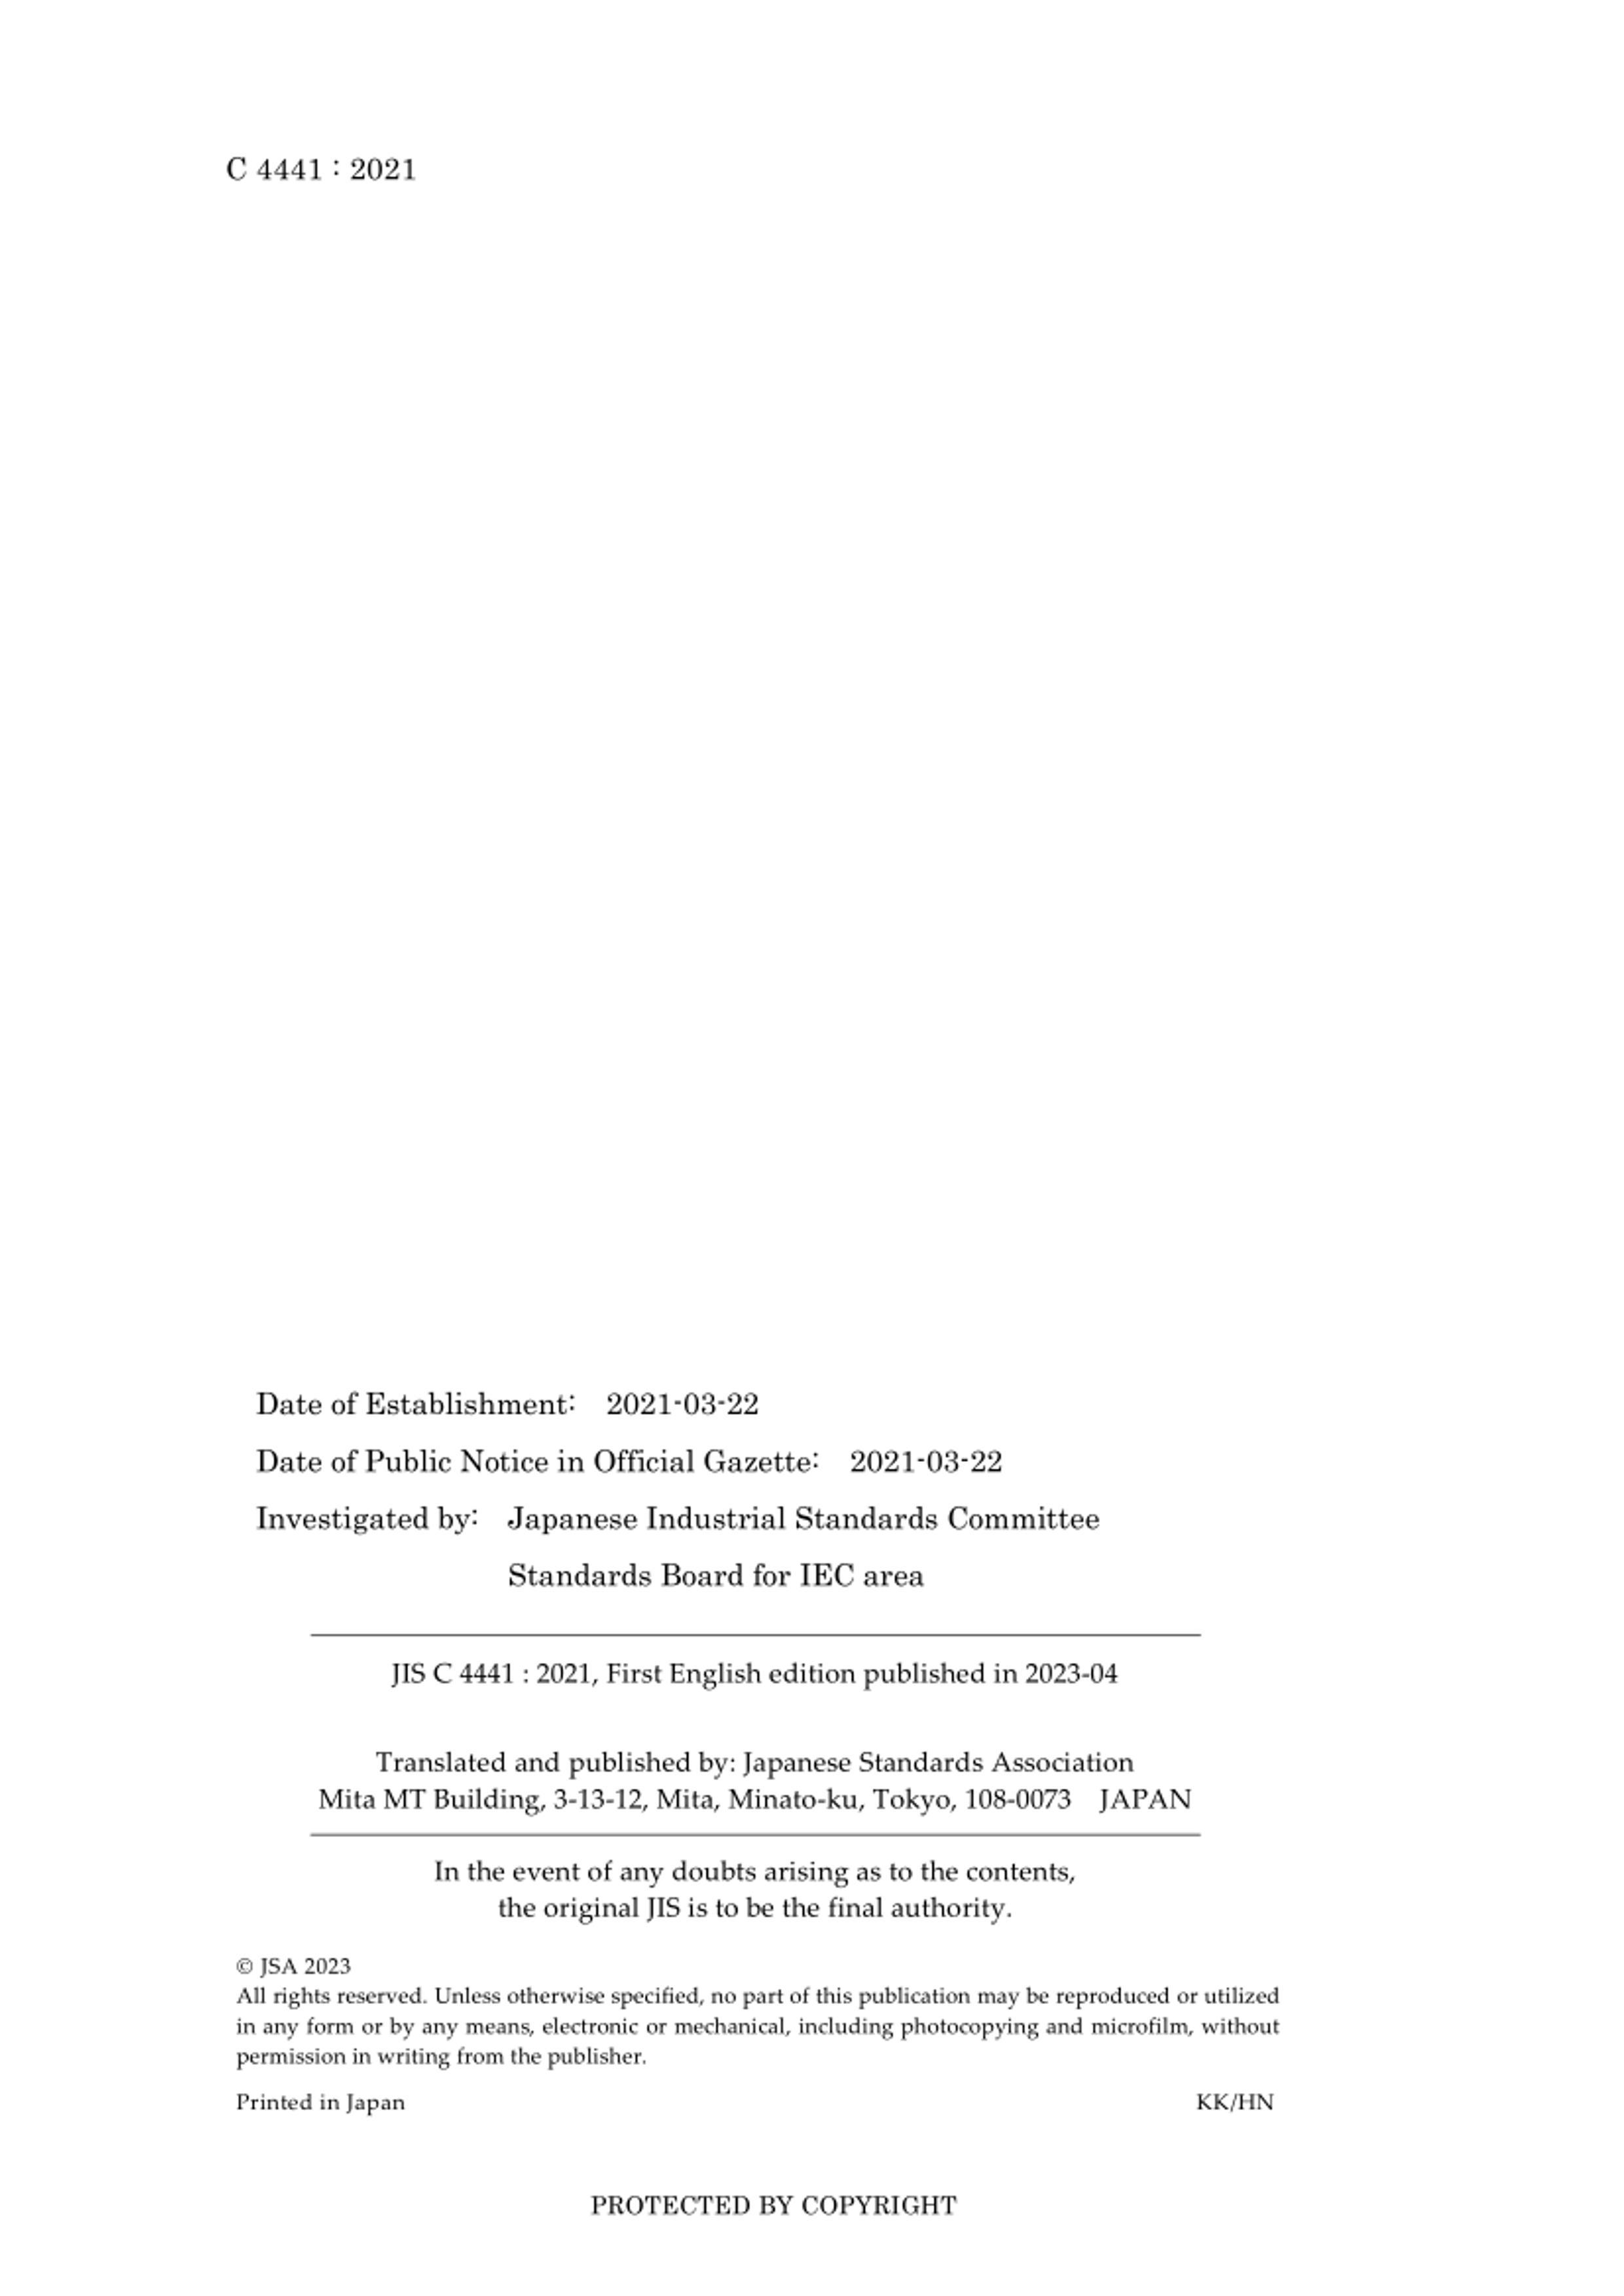 JIS C4441-2021.pdf3ҳ